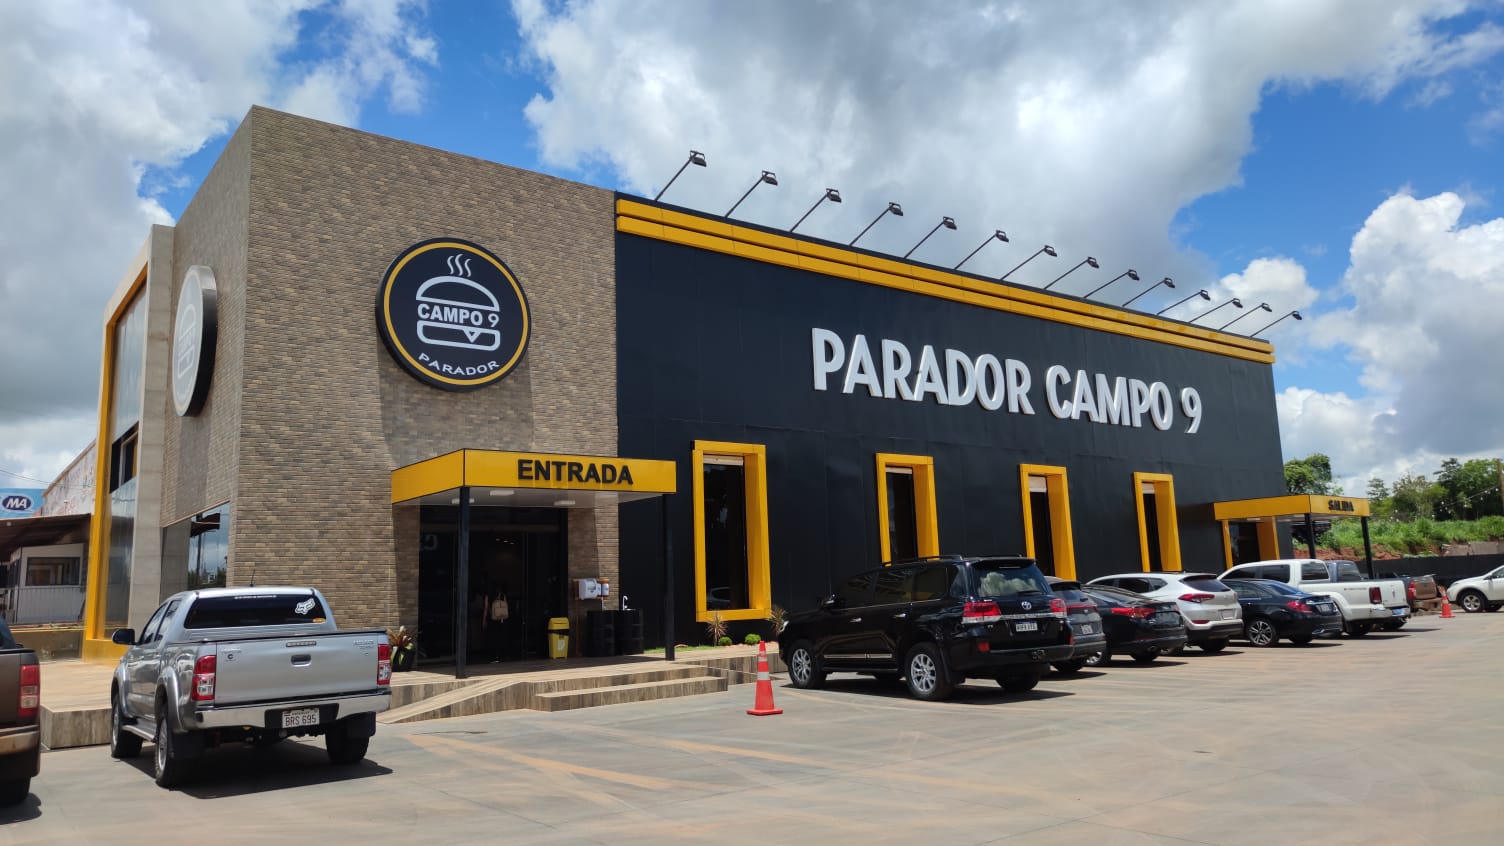 Parador Campo 9